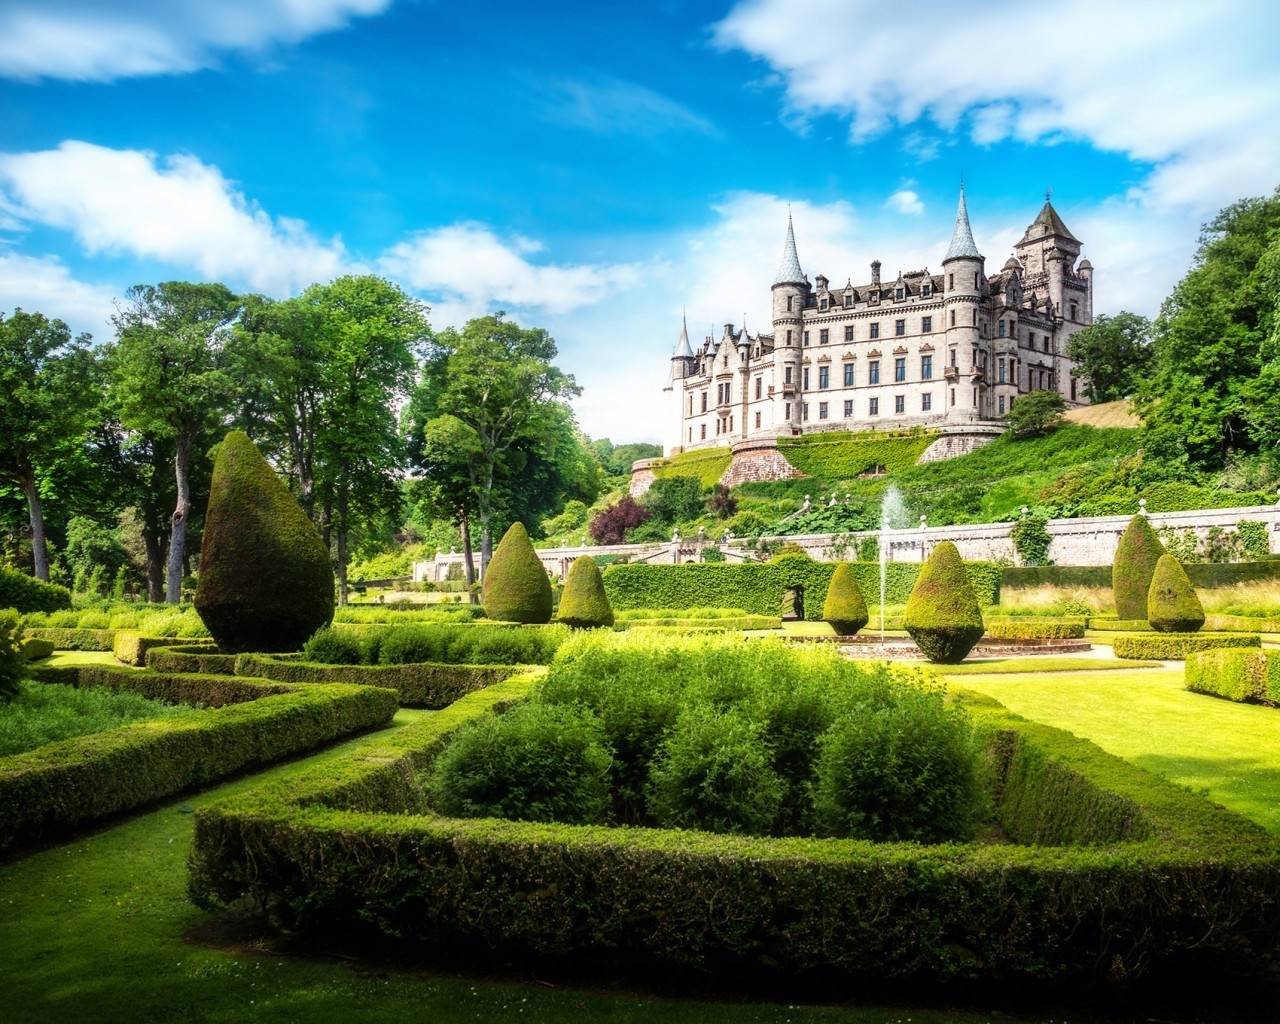 Dunrobin Castle Garden for 1280 x 1024 resolution